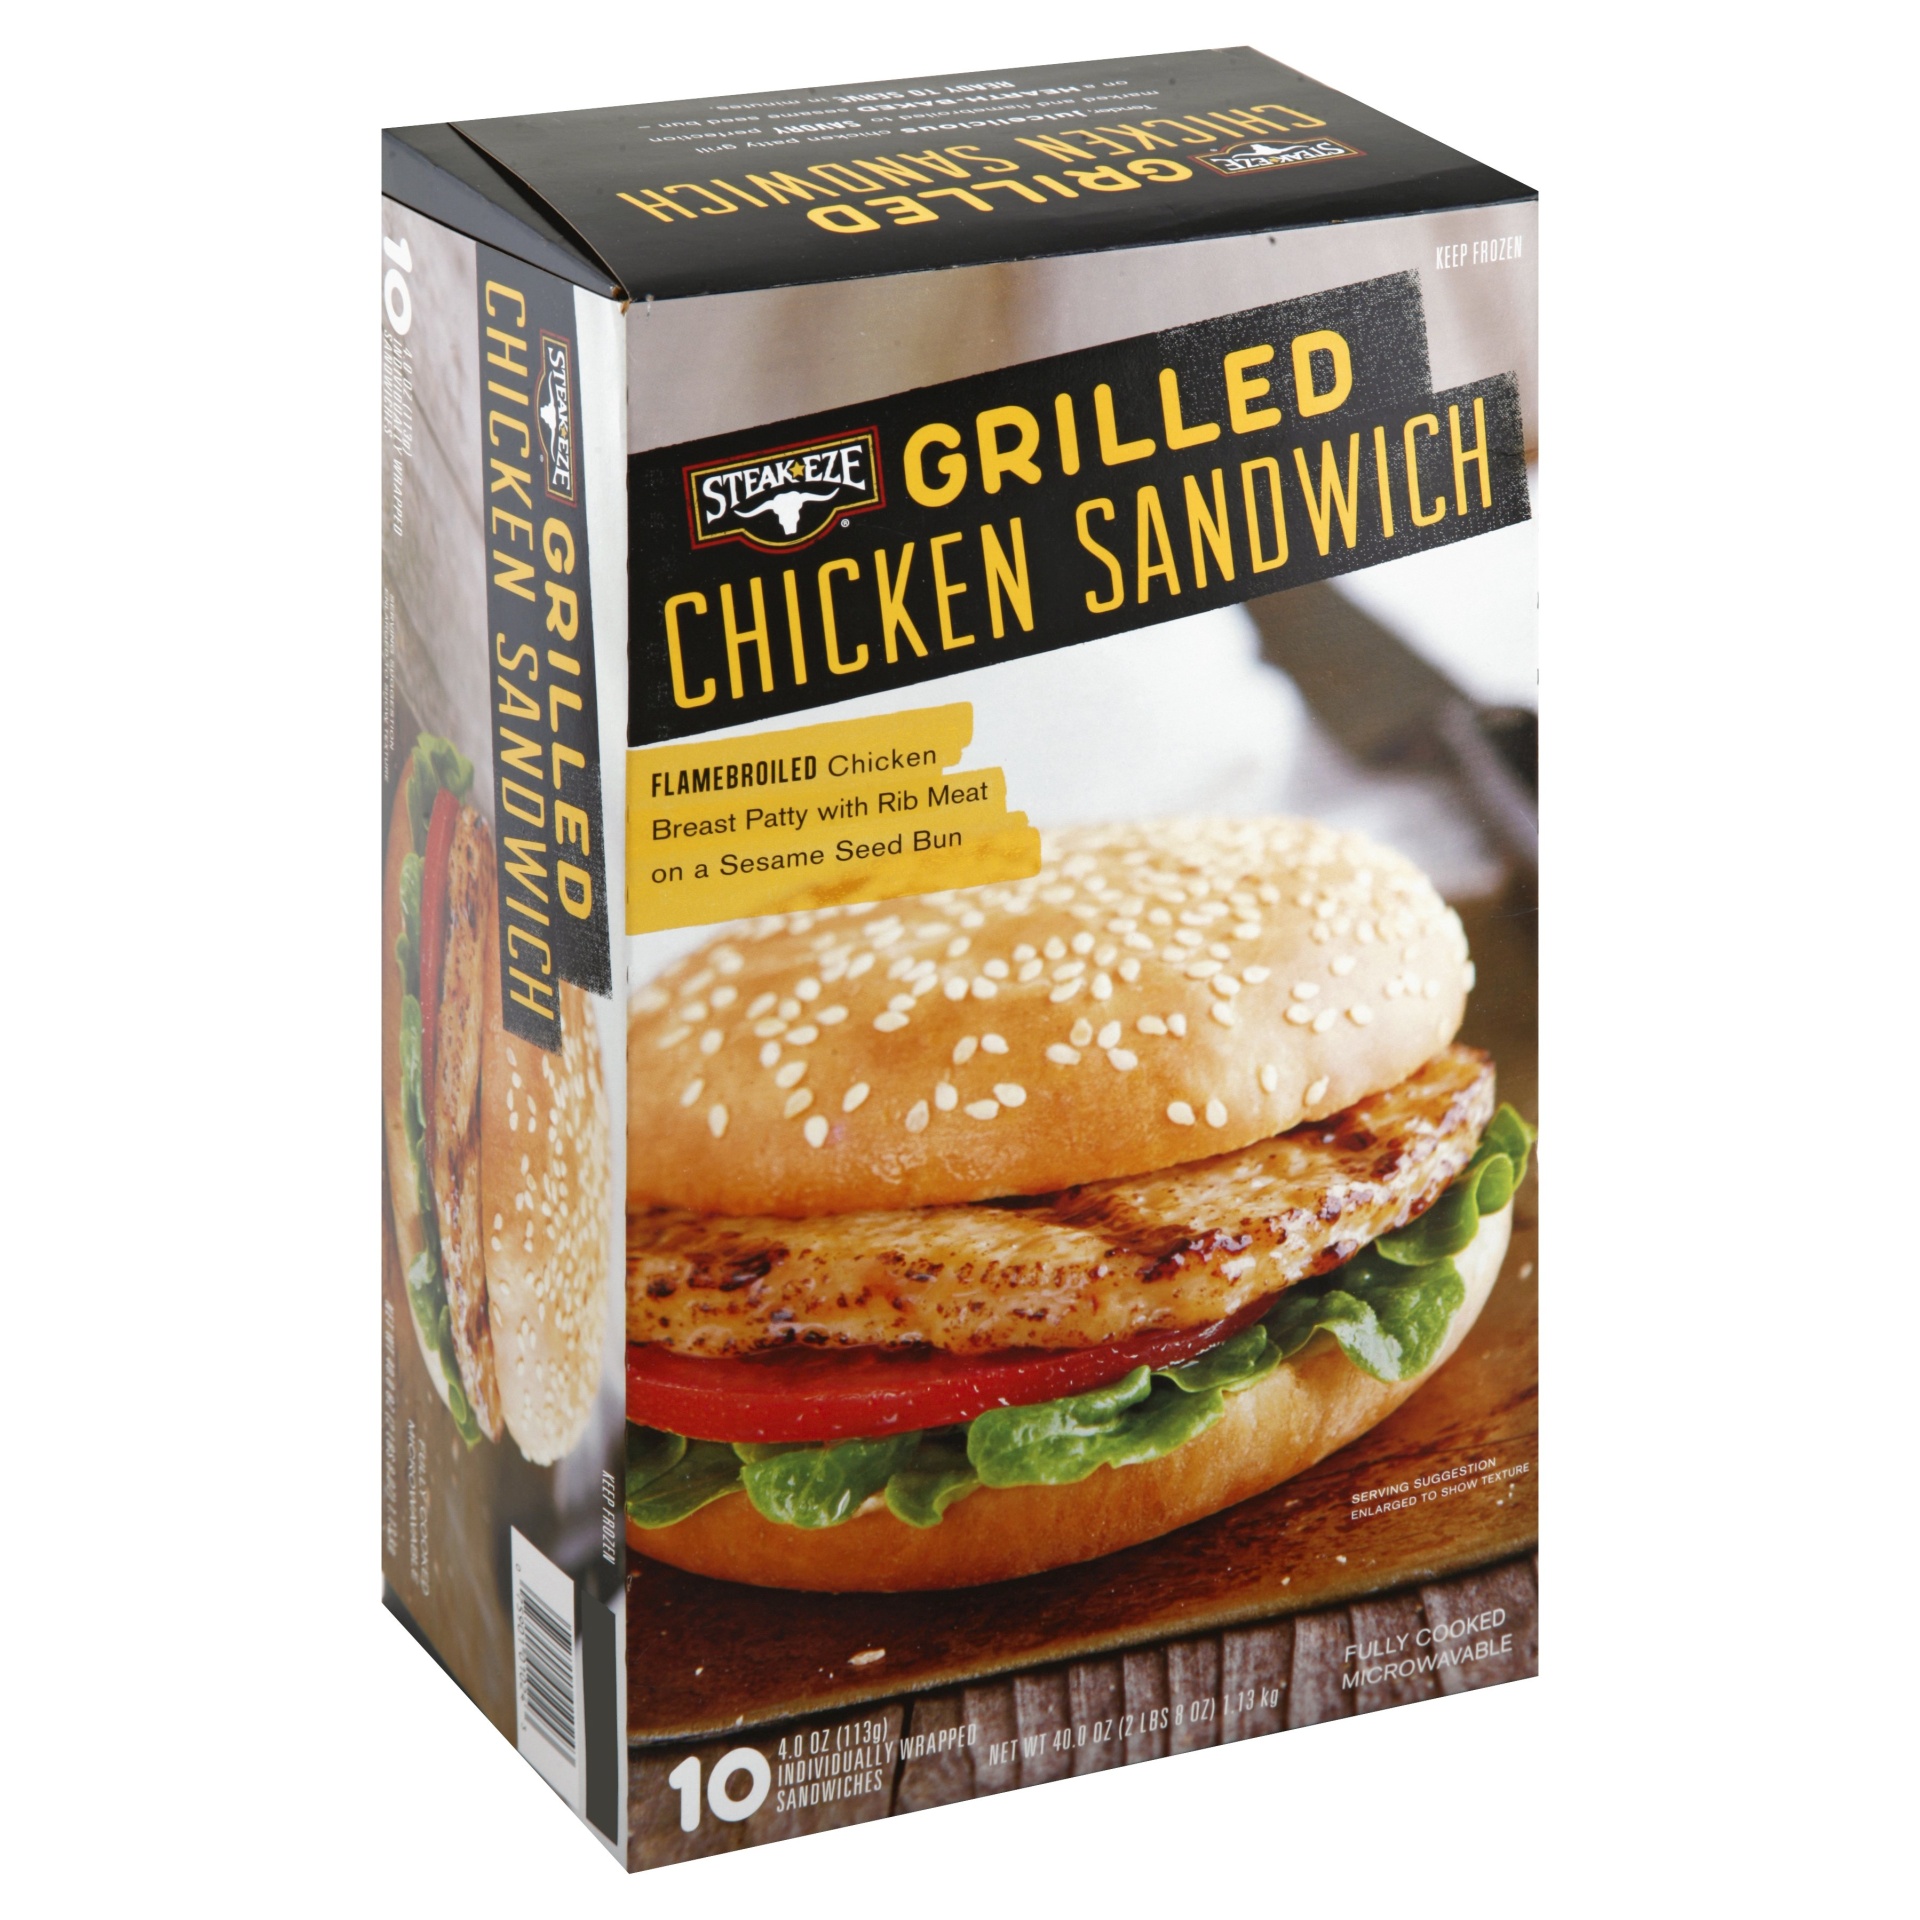 slide 1 of 8, AdvancePierre Steak Eze Grilled Chicken Sandwich, 40 oz